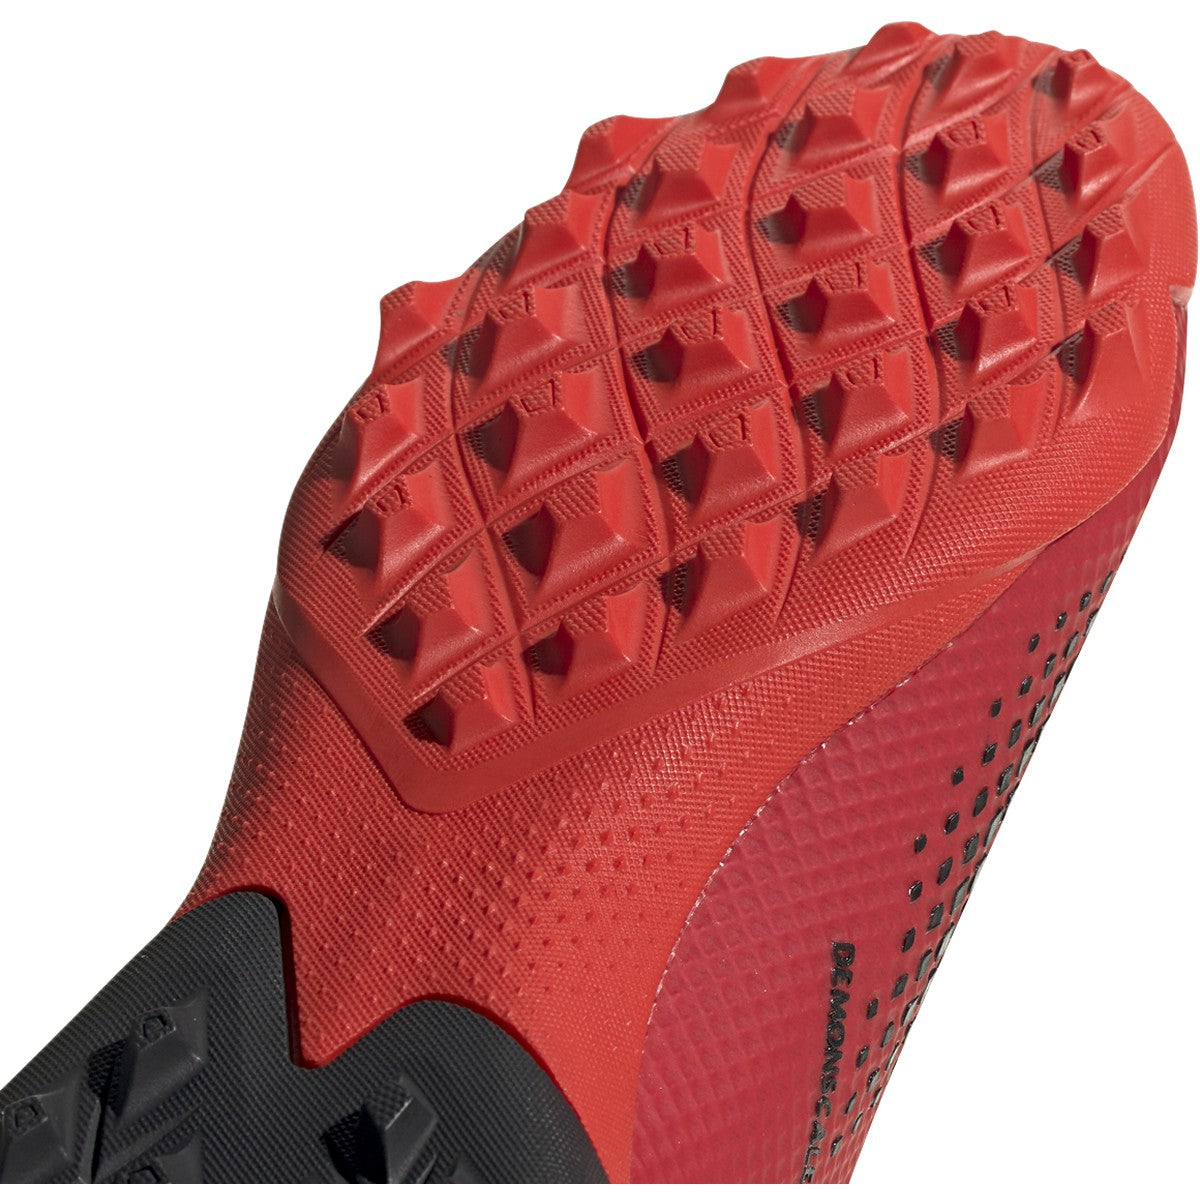 Adidas Predator 20.3 LL Turf Soccer Shoes